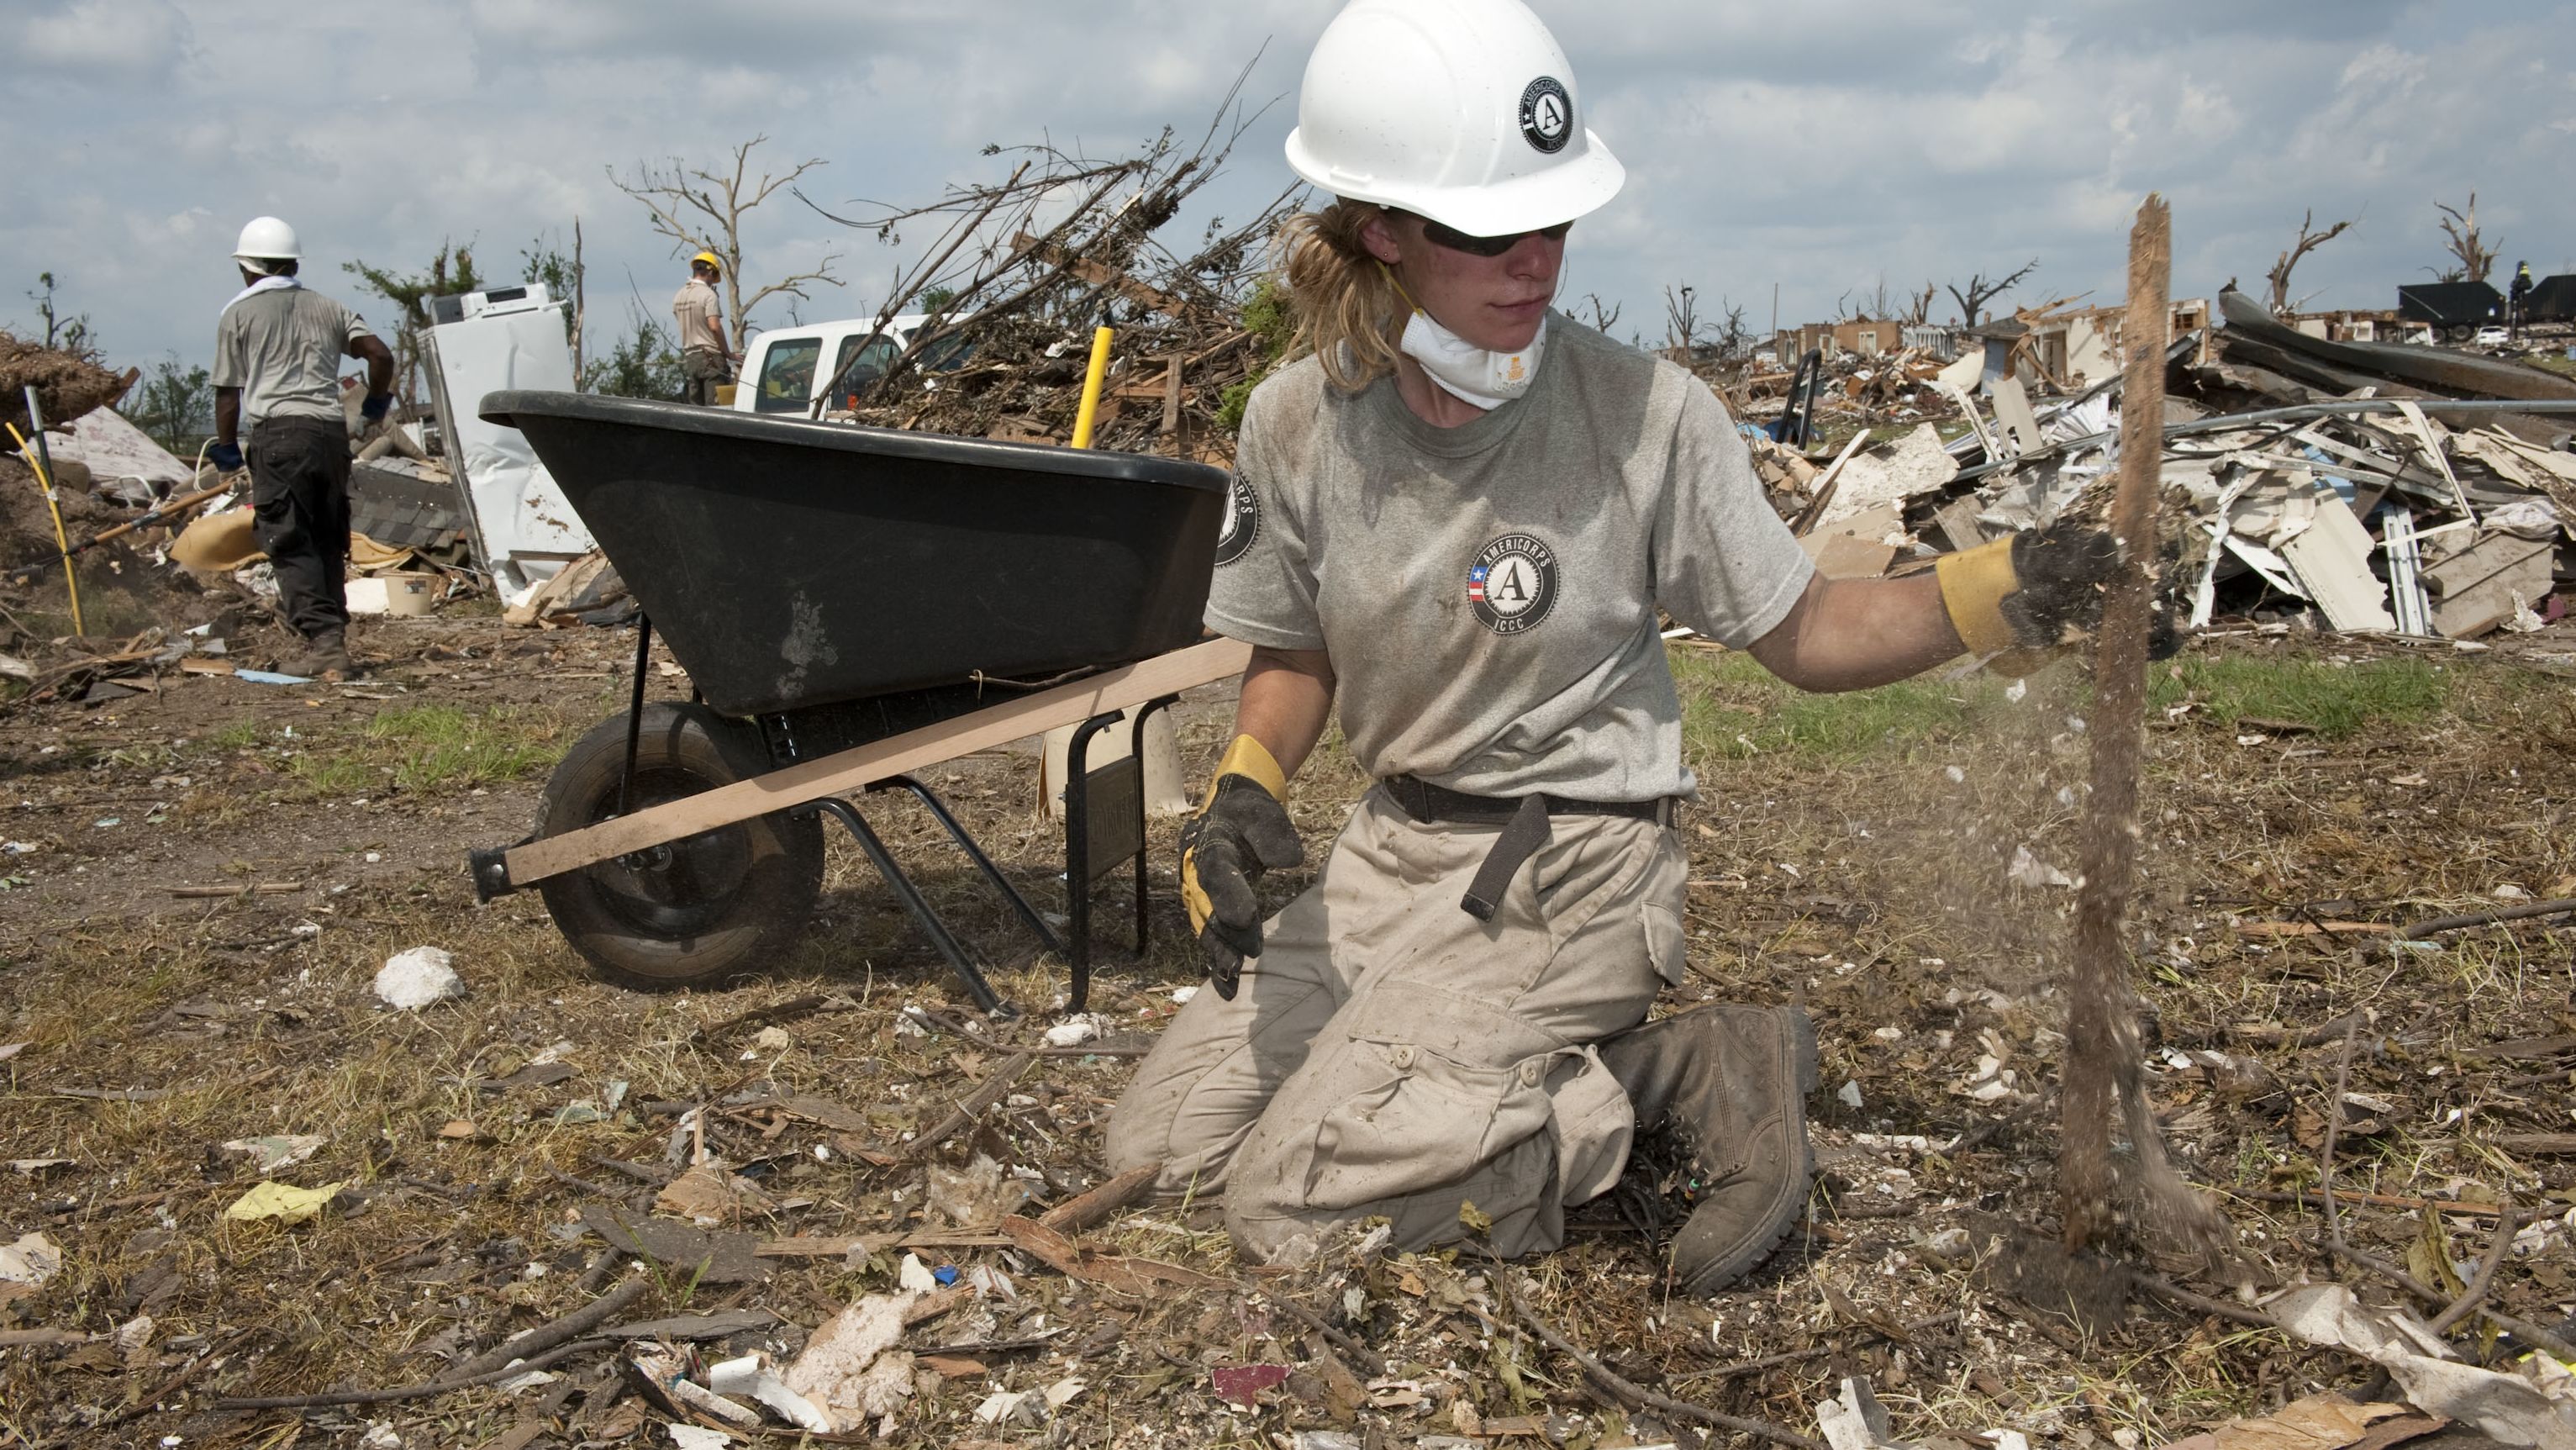  AmeriCorps volunteer Teri Jacobs picks up debris after a tornado in Joplin, Missouri, in June 2011.